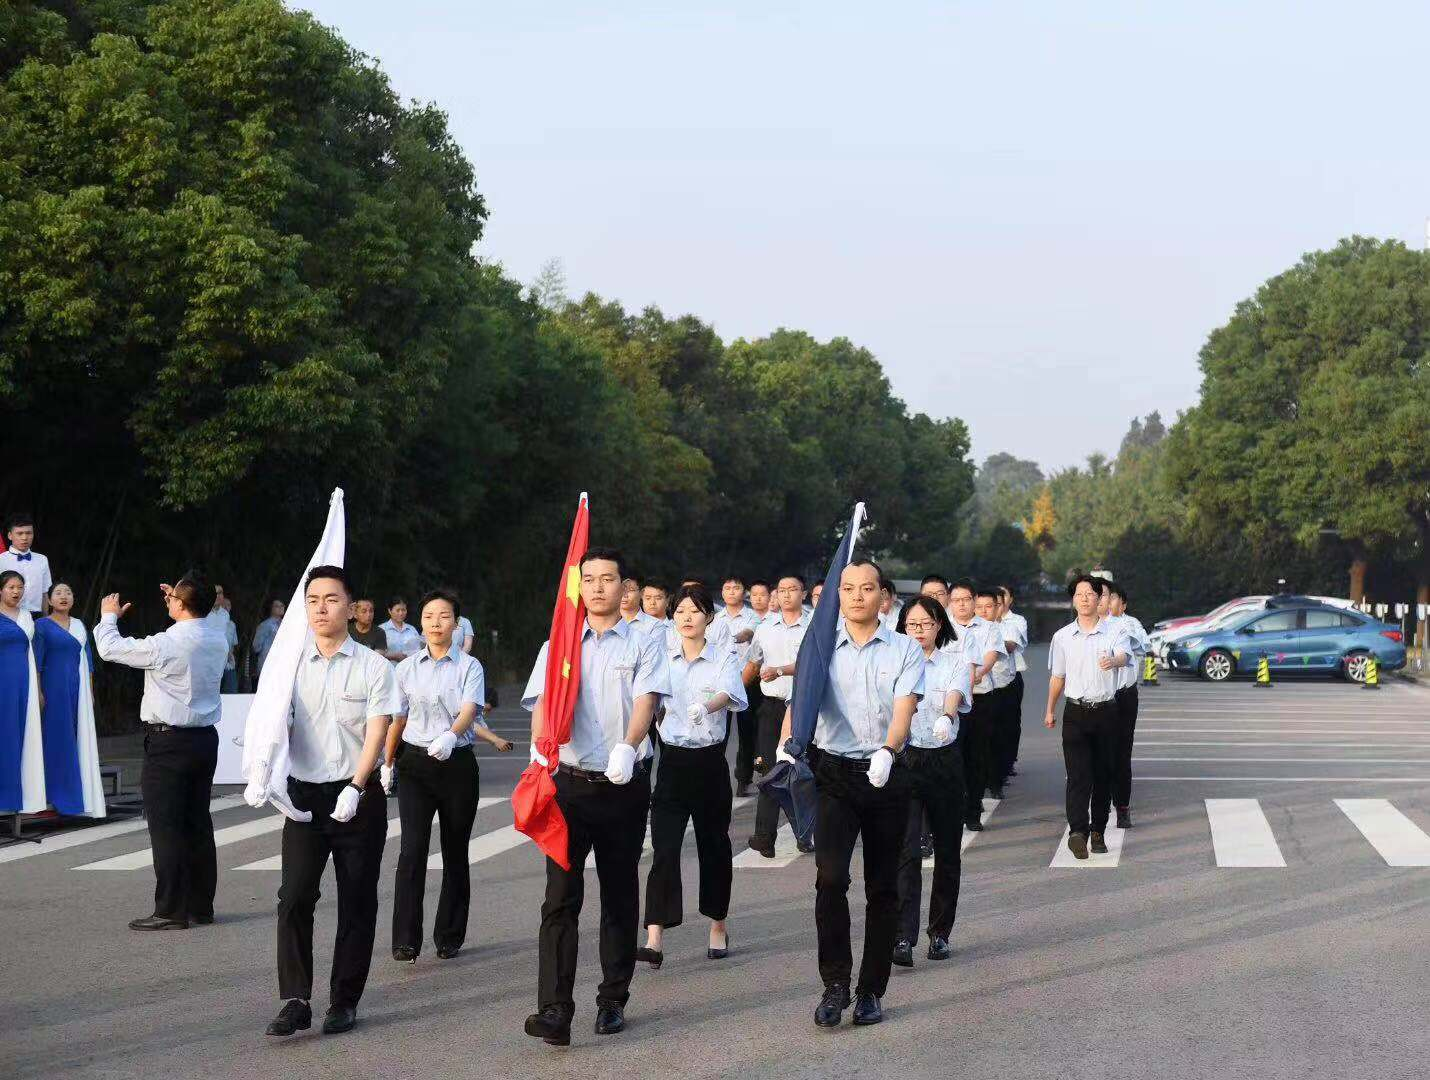 Shandong Datu järjesti lipunnostoseremonian juhlistaakseen Uuden Kiinan perustamisen 73. vuosipäivää